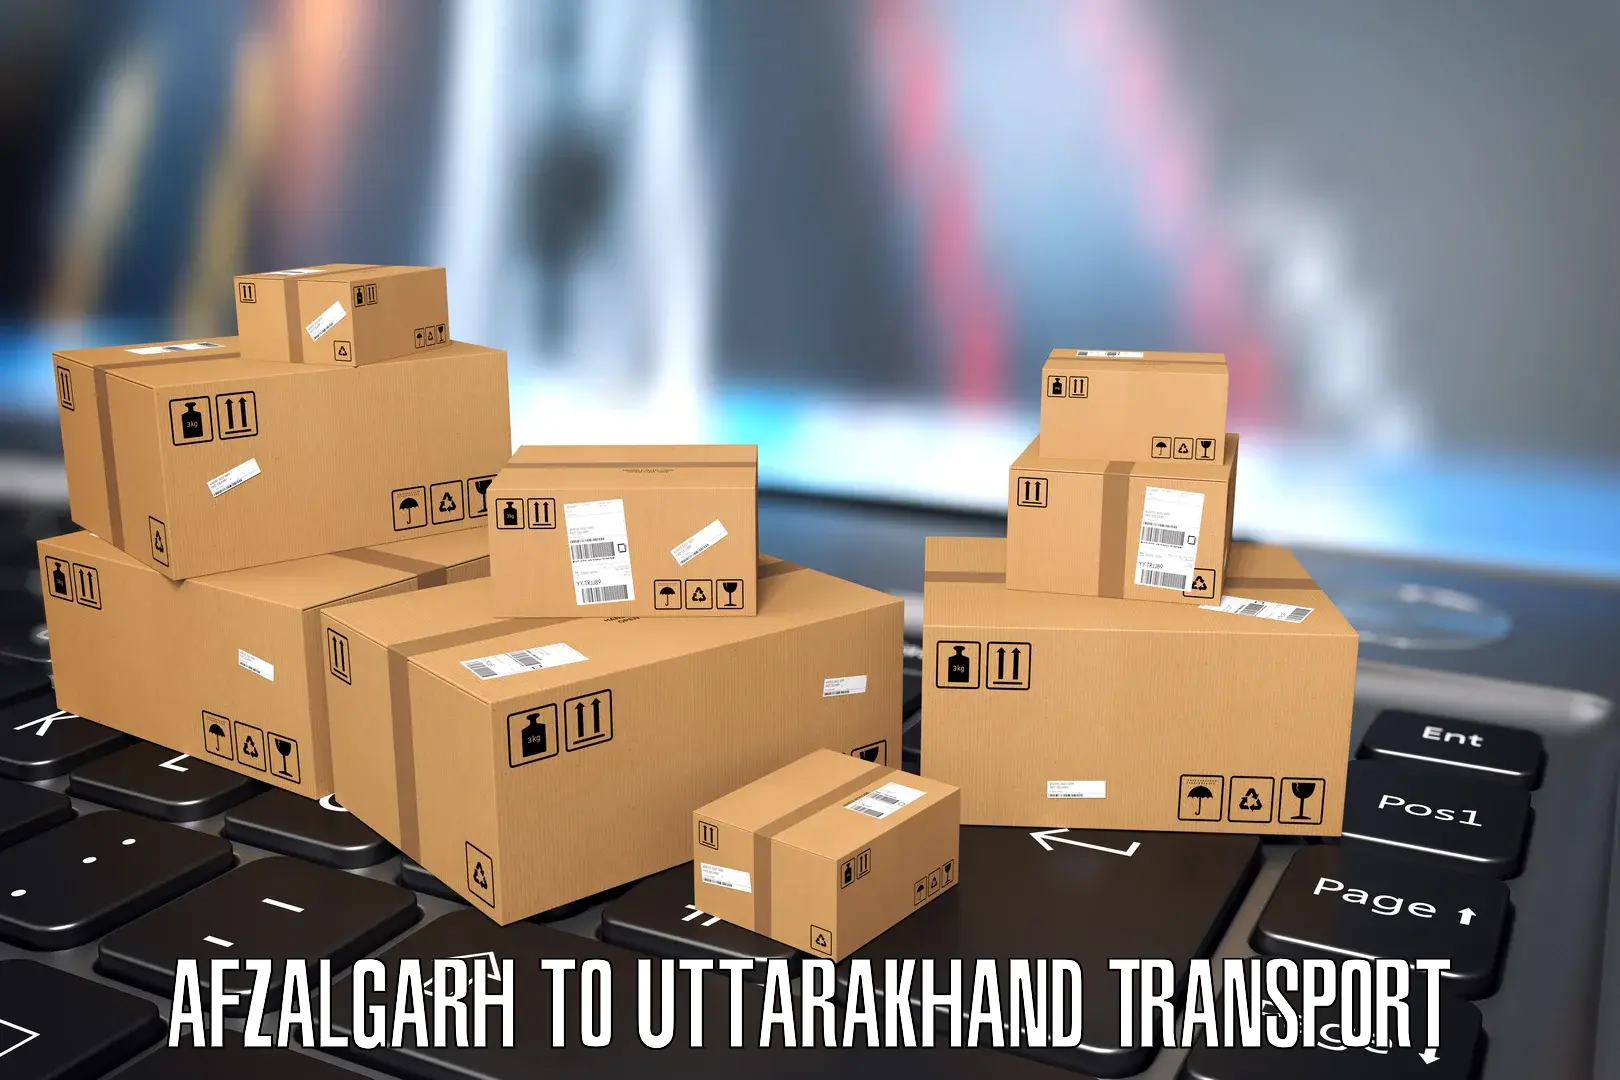 Air cargo transport services Afzalgarh to Dehradun